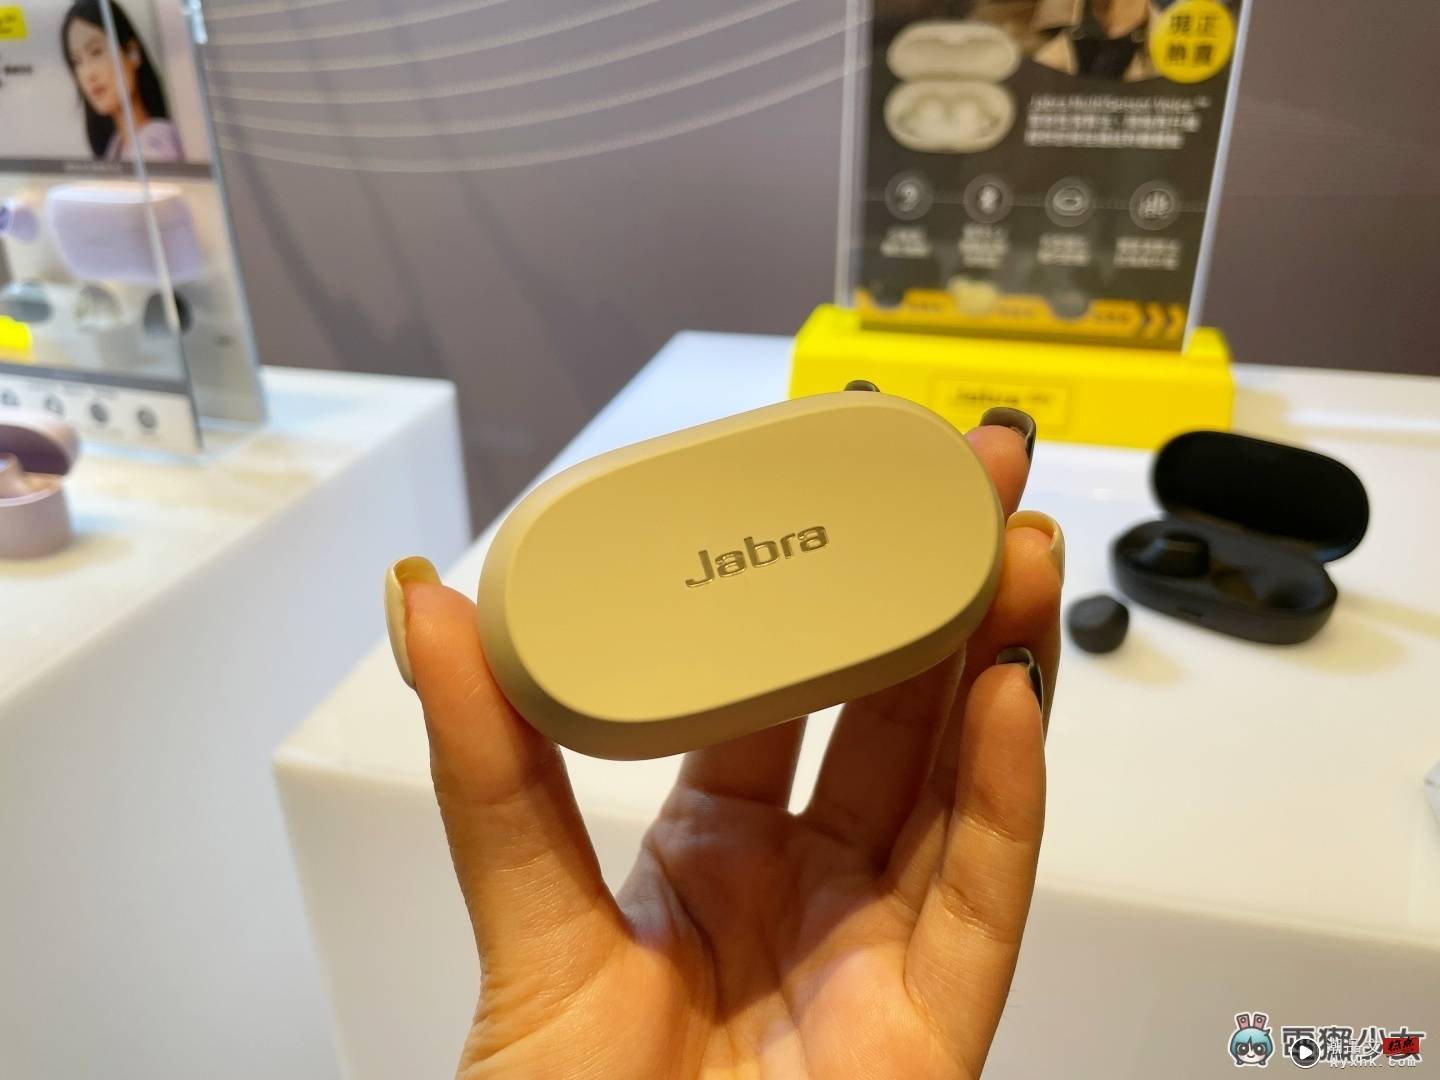 出门｜Jabra 推出两款真无线蓝牙耳机：Elite 7 Pro 主打清晰通话、Elite 7 Active 专用运动用户设计 数码科技 图5张